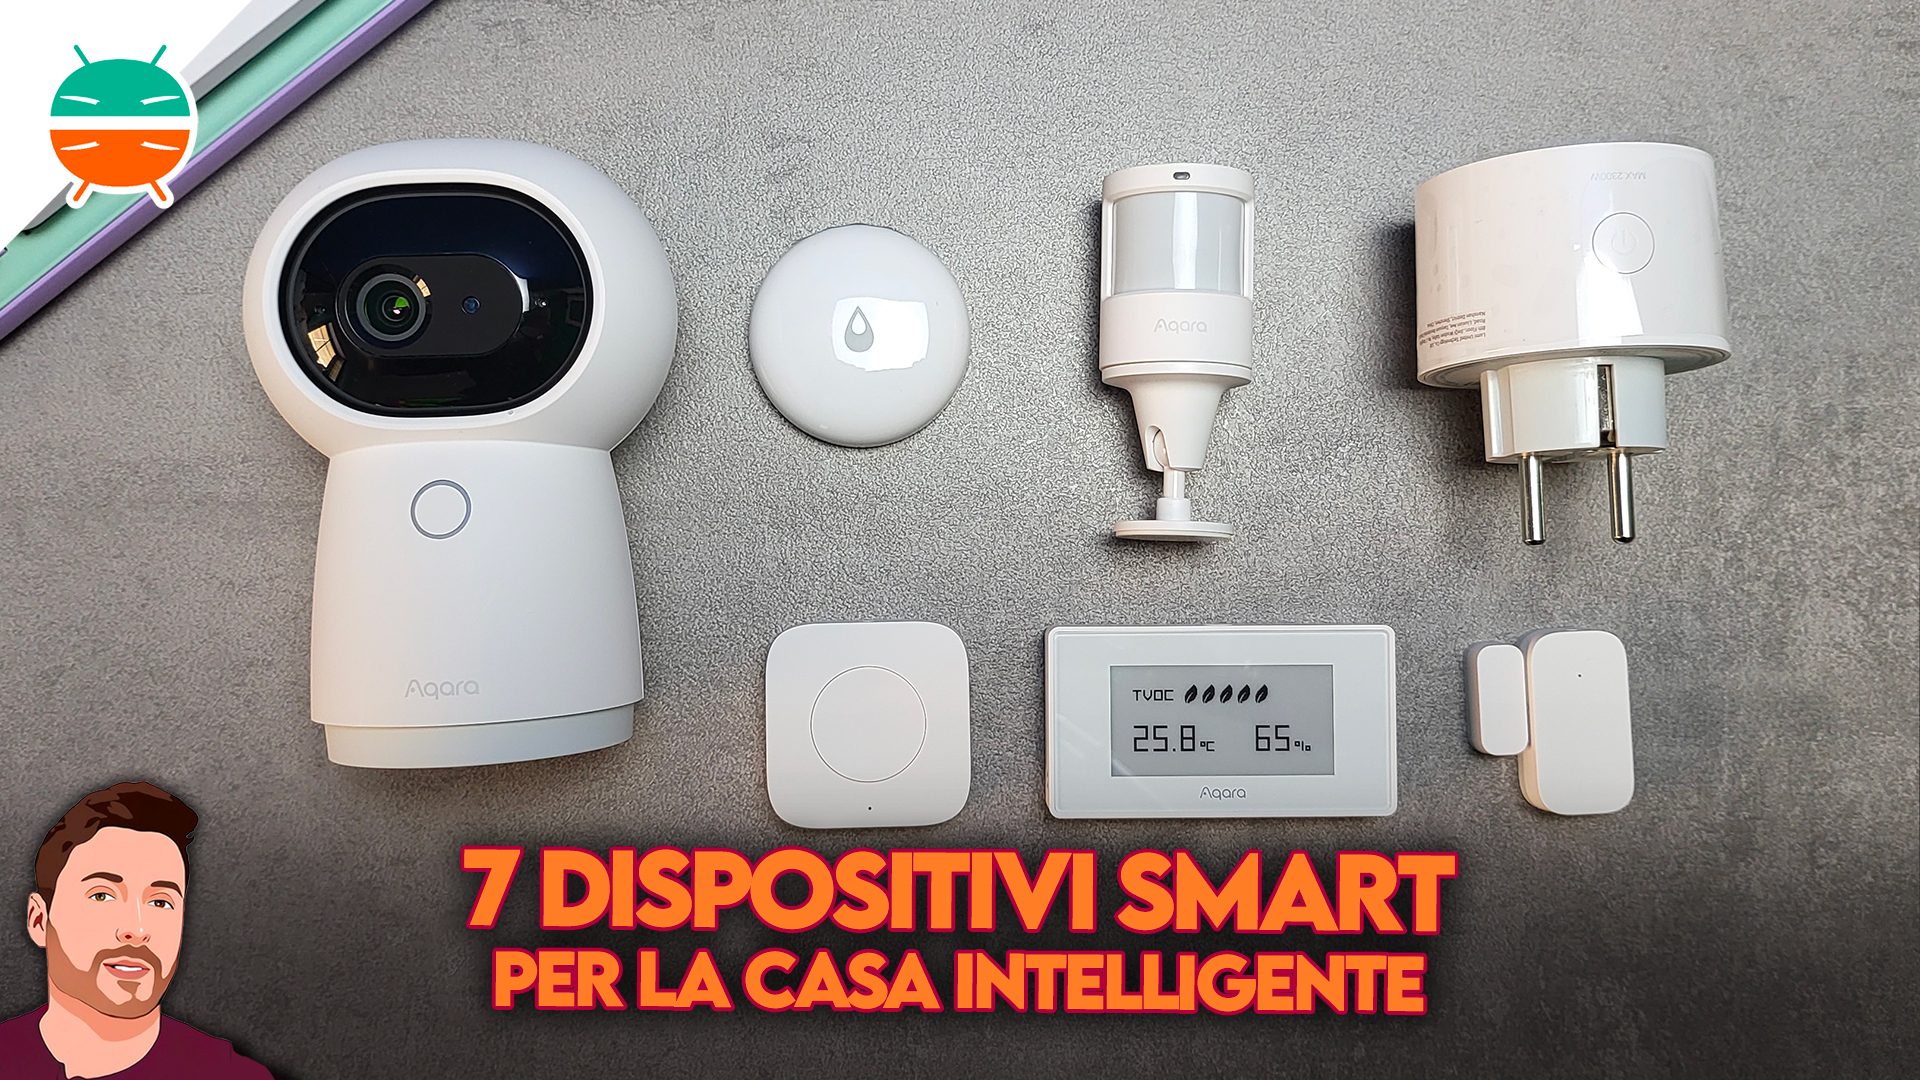 Smart Home: los mejores gadgets para tu hogar inteligente en 2022